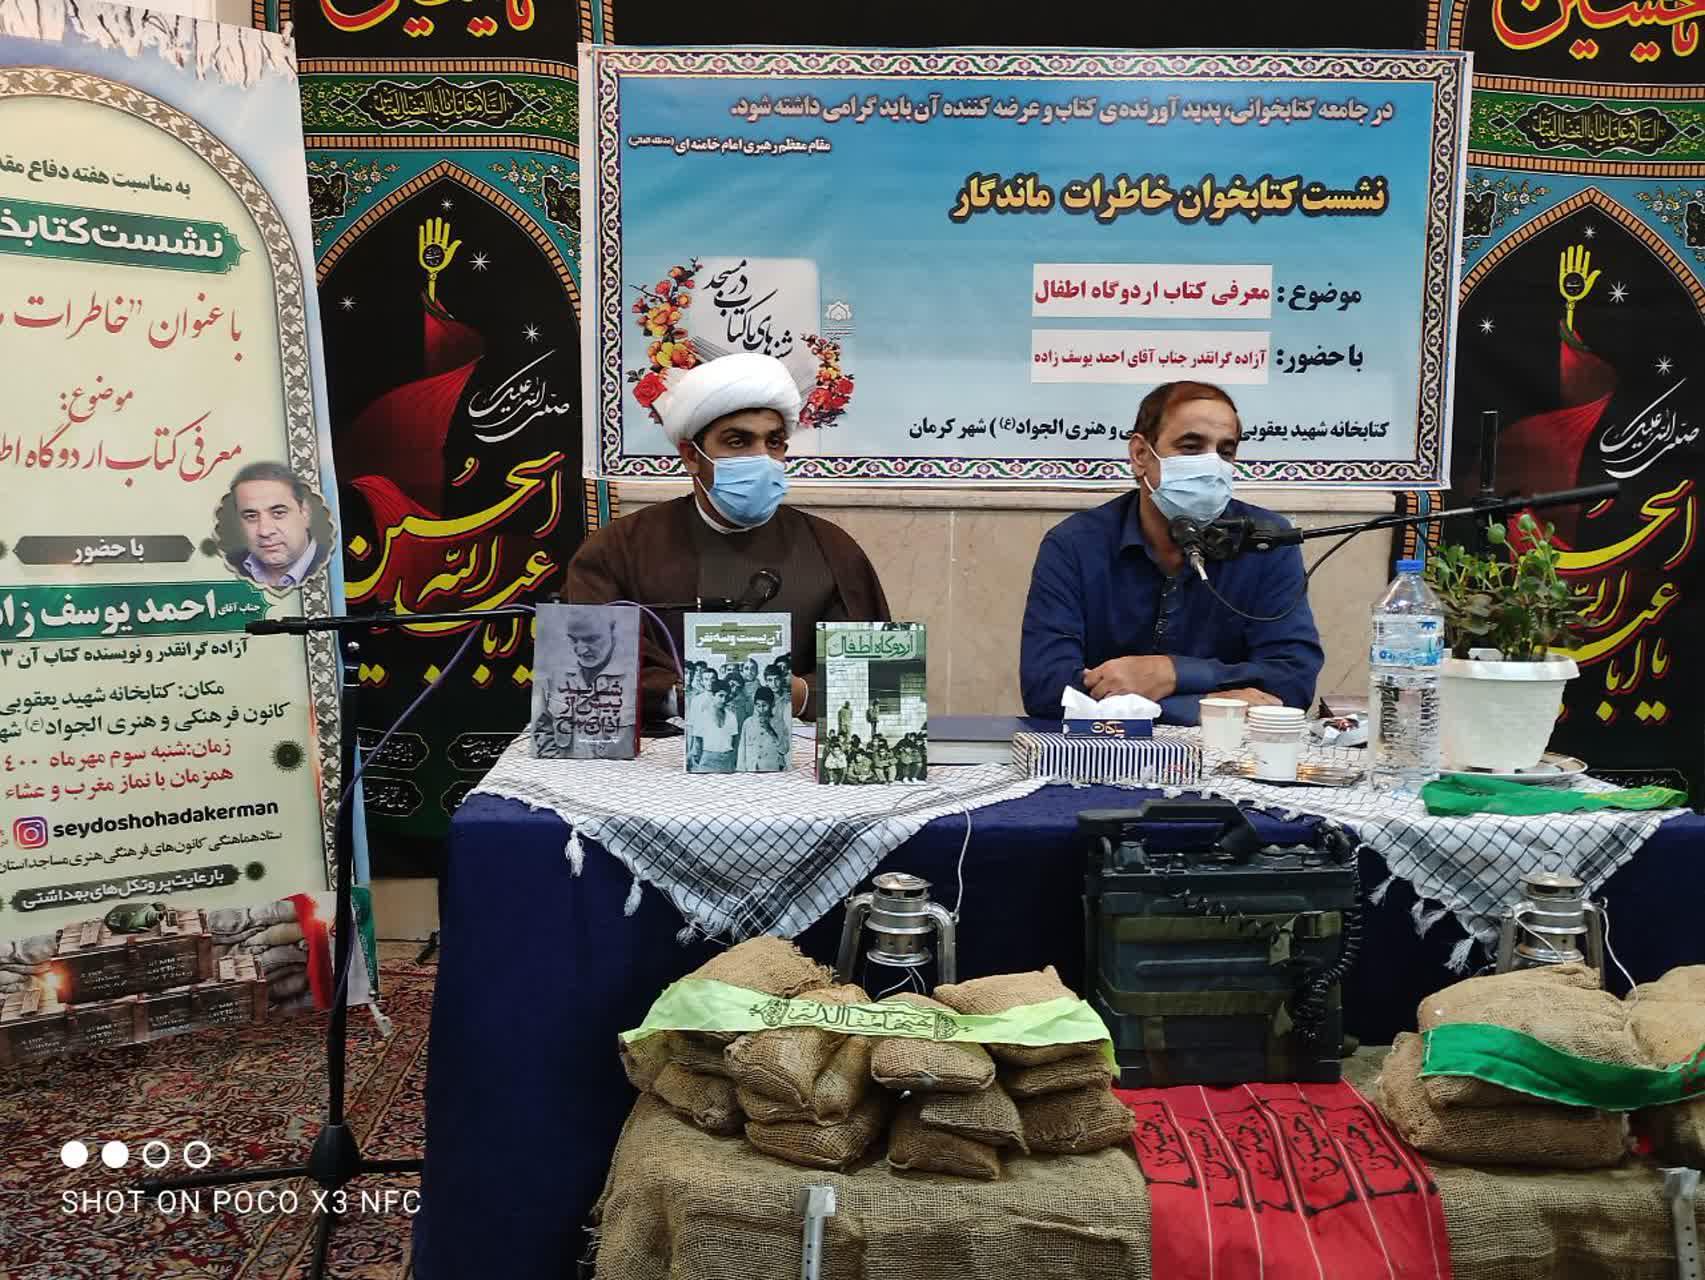 نشست کتابخوان با معرفي کتاب «اردوگاه اطفال» در کرمان